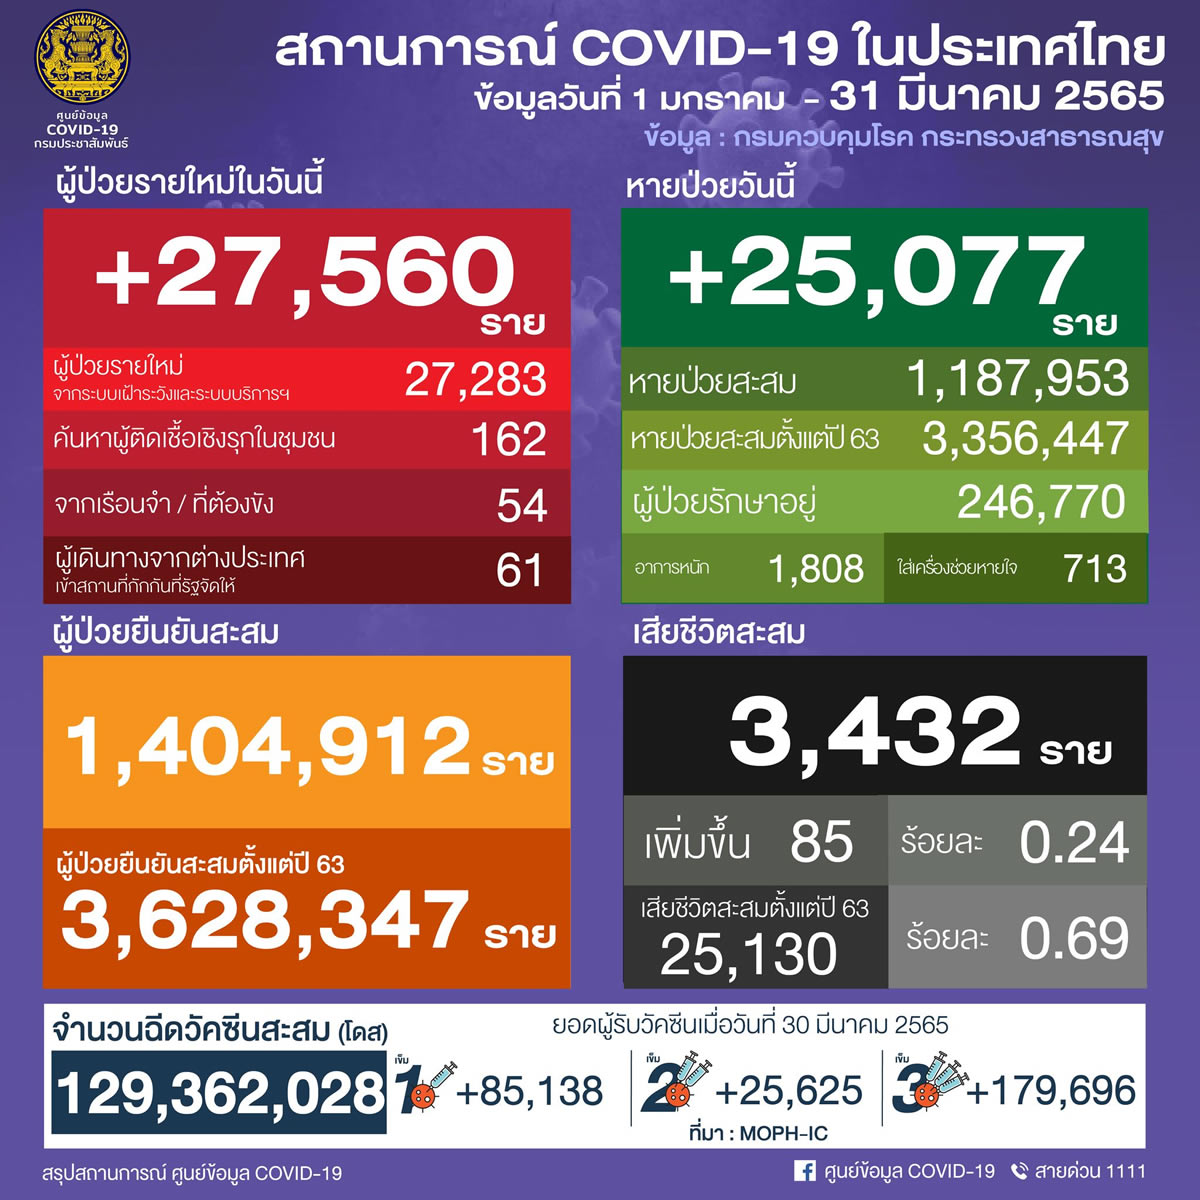 タイ 27,560人陽性 85人死亡／バンコク 3,344人陽性／チョンブリ 1,414人陽性／ナコンシータマラート 1,412人陽性［2022年3月31日発表］